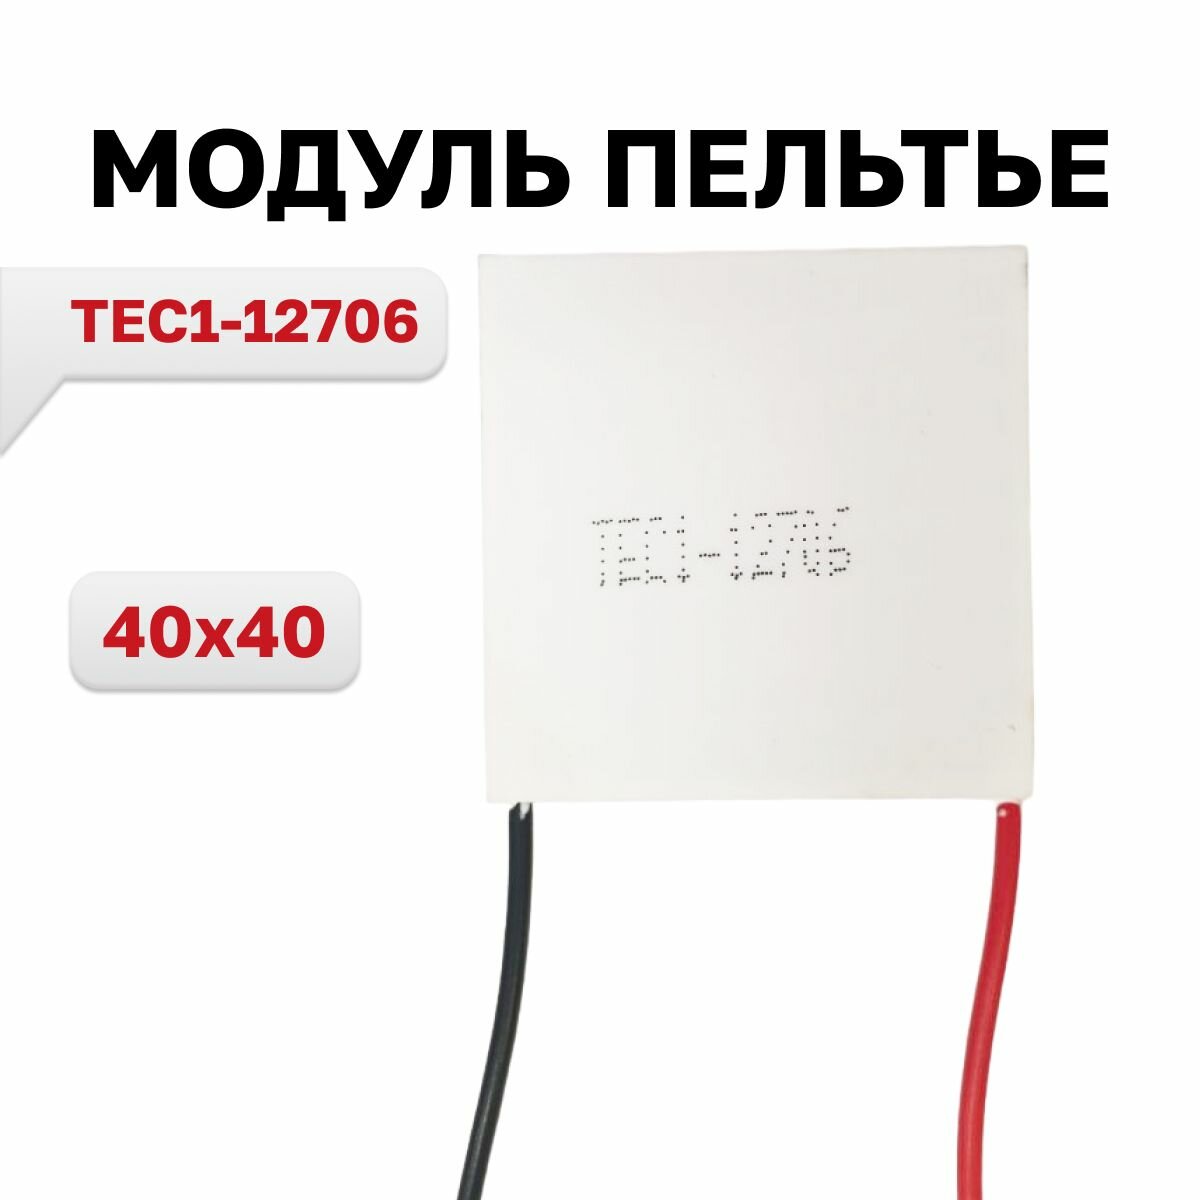 TEC1-12706 модуль Пельтье 40x40